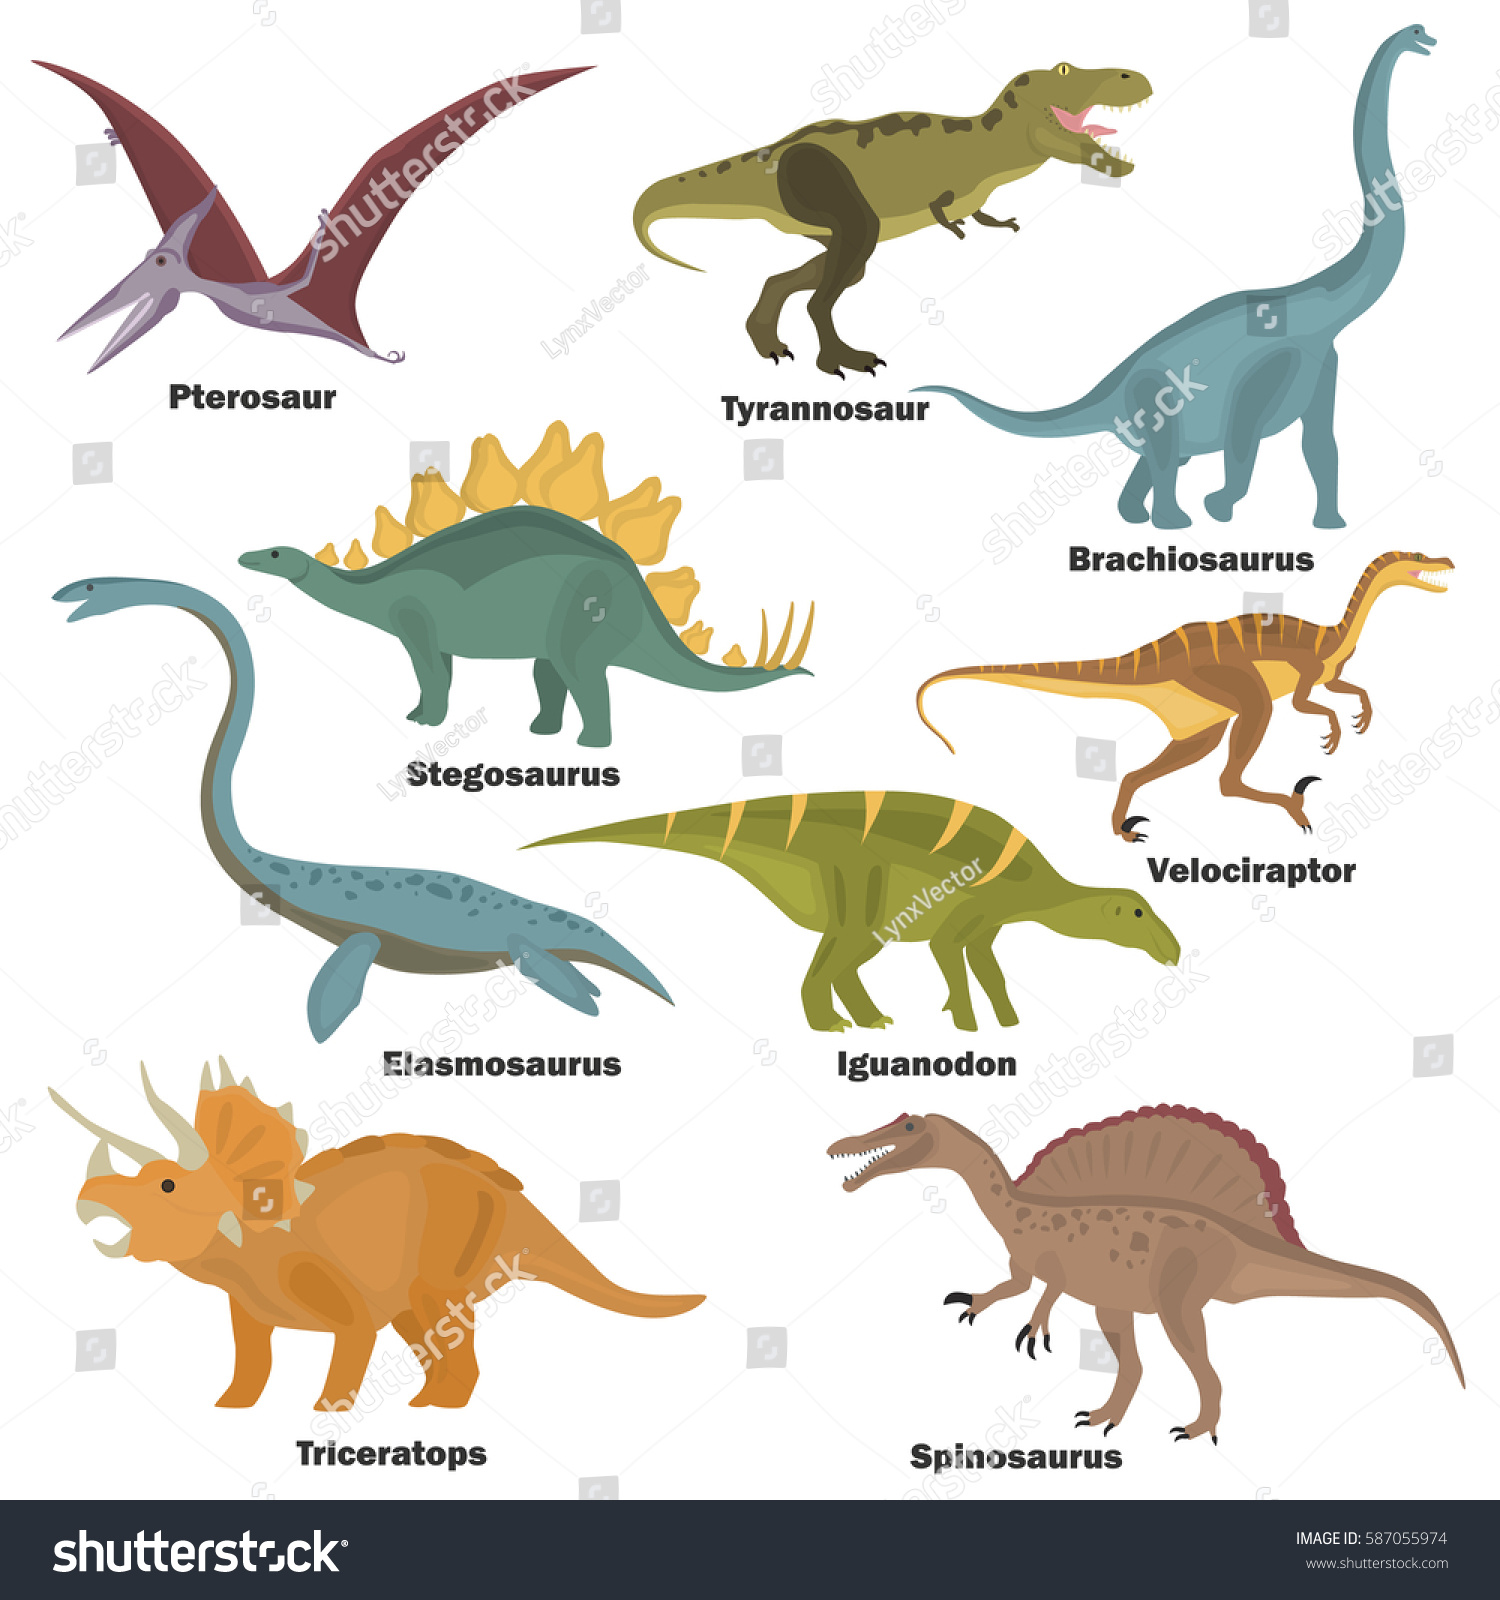 ensemble d icones a plat couleur dinosaures image vectorielle de stock libre droits 587055974 coloriage batman